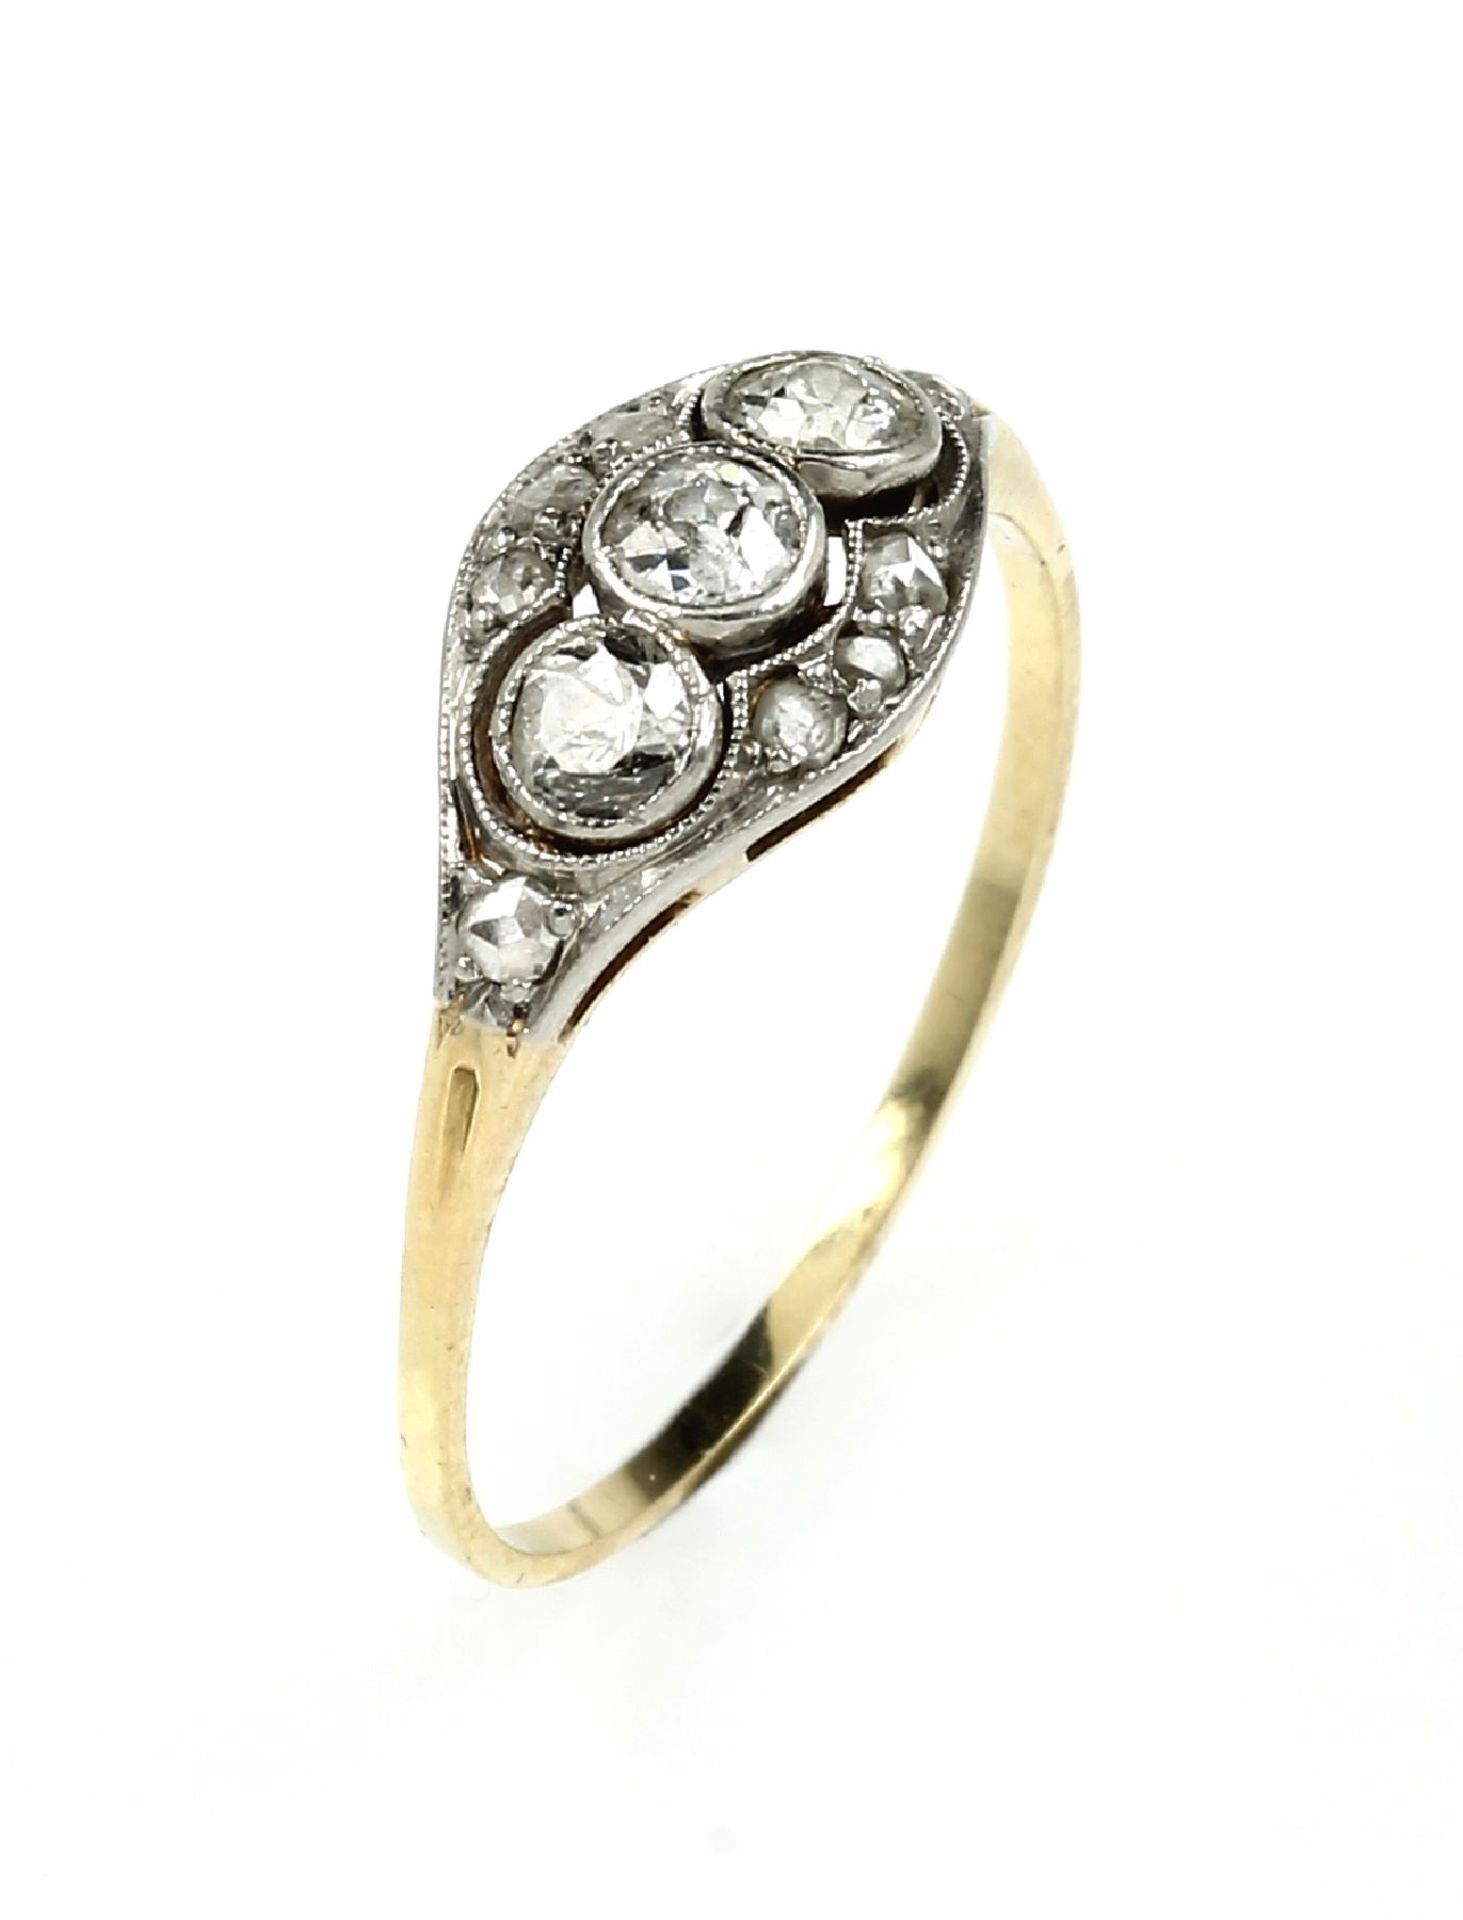 14 kt Gold Ring mit Diamanten, um 1910/20, Schauseite